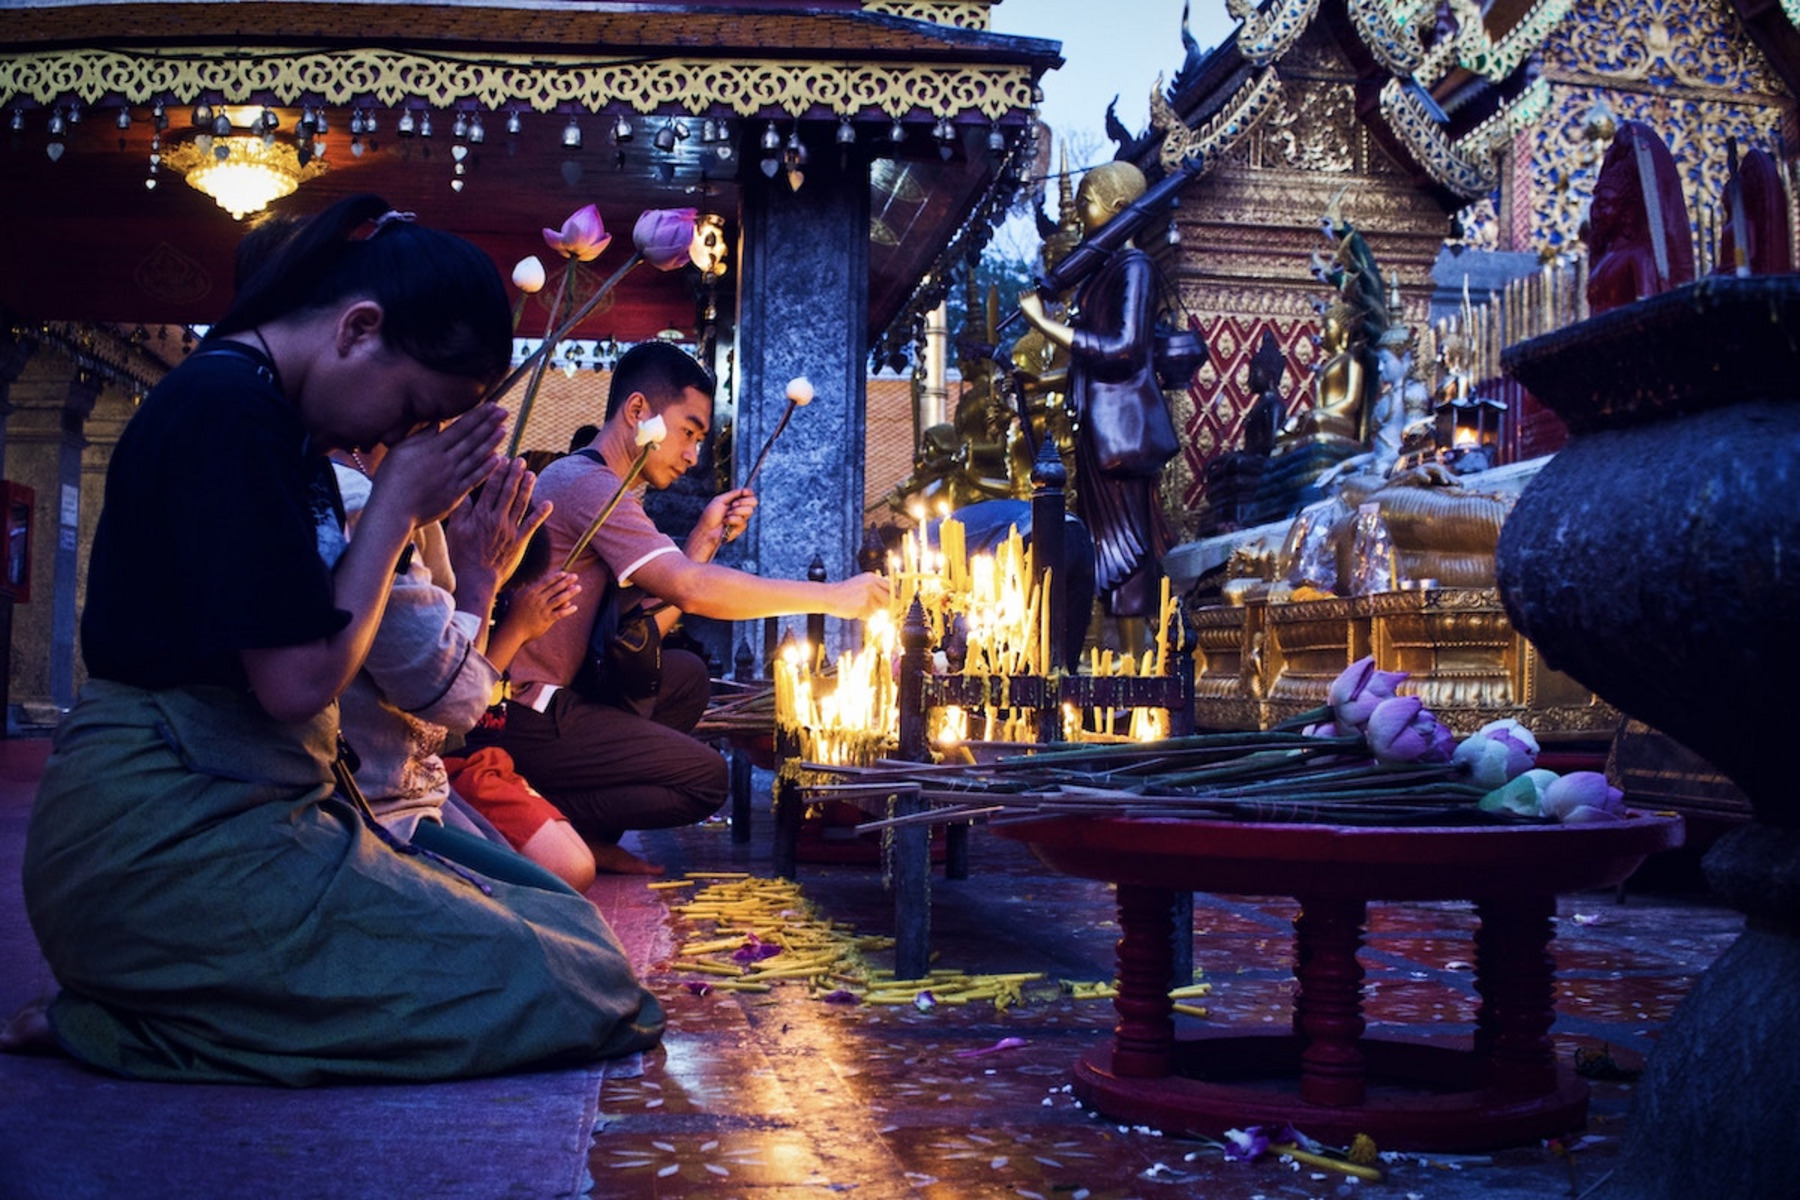 Menschen beten und zünden Kerzen an in einem Tempel.